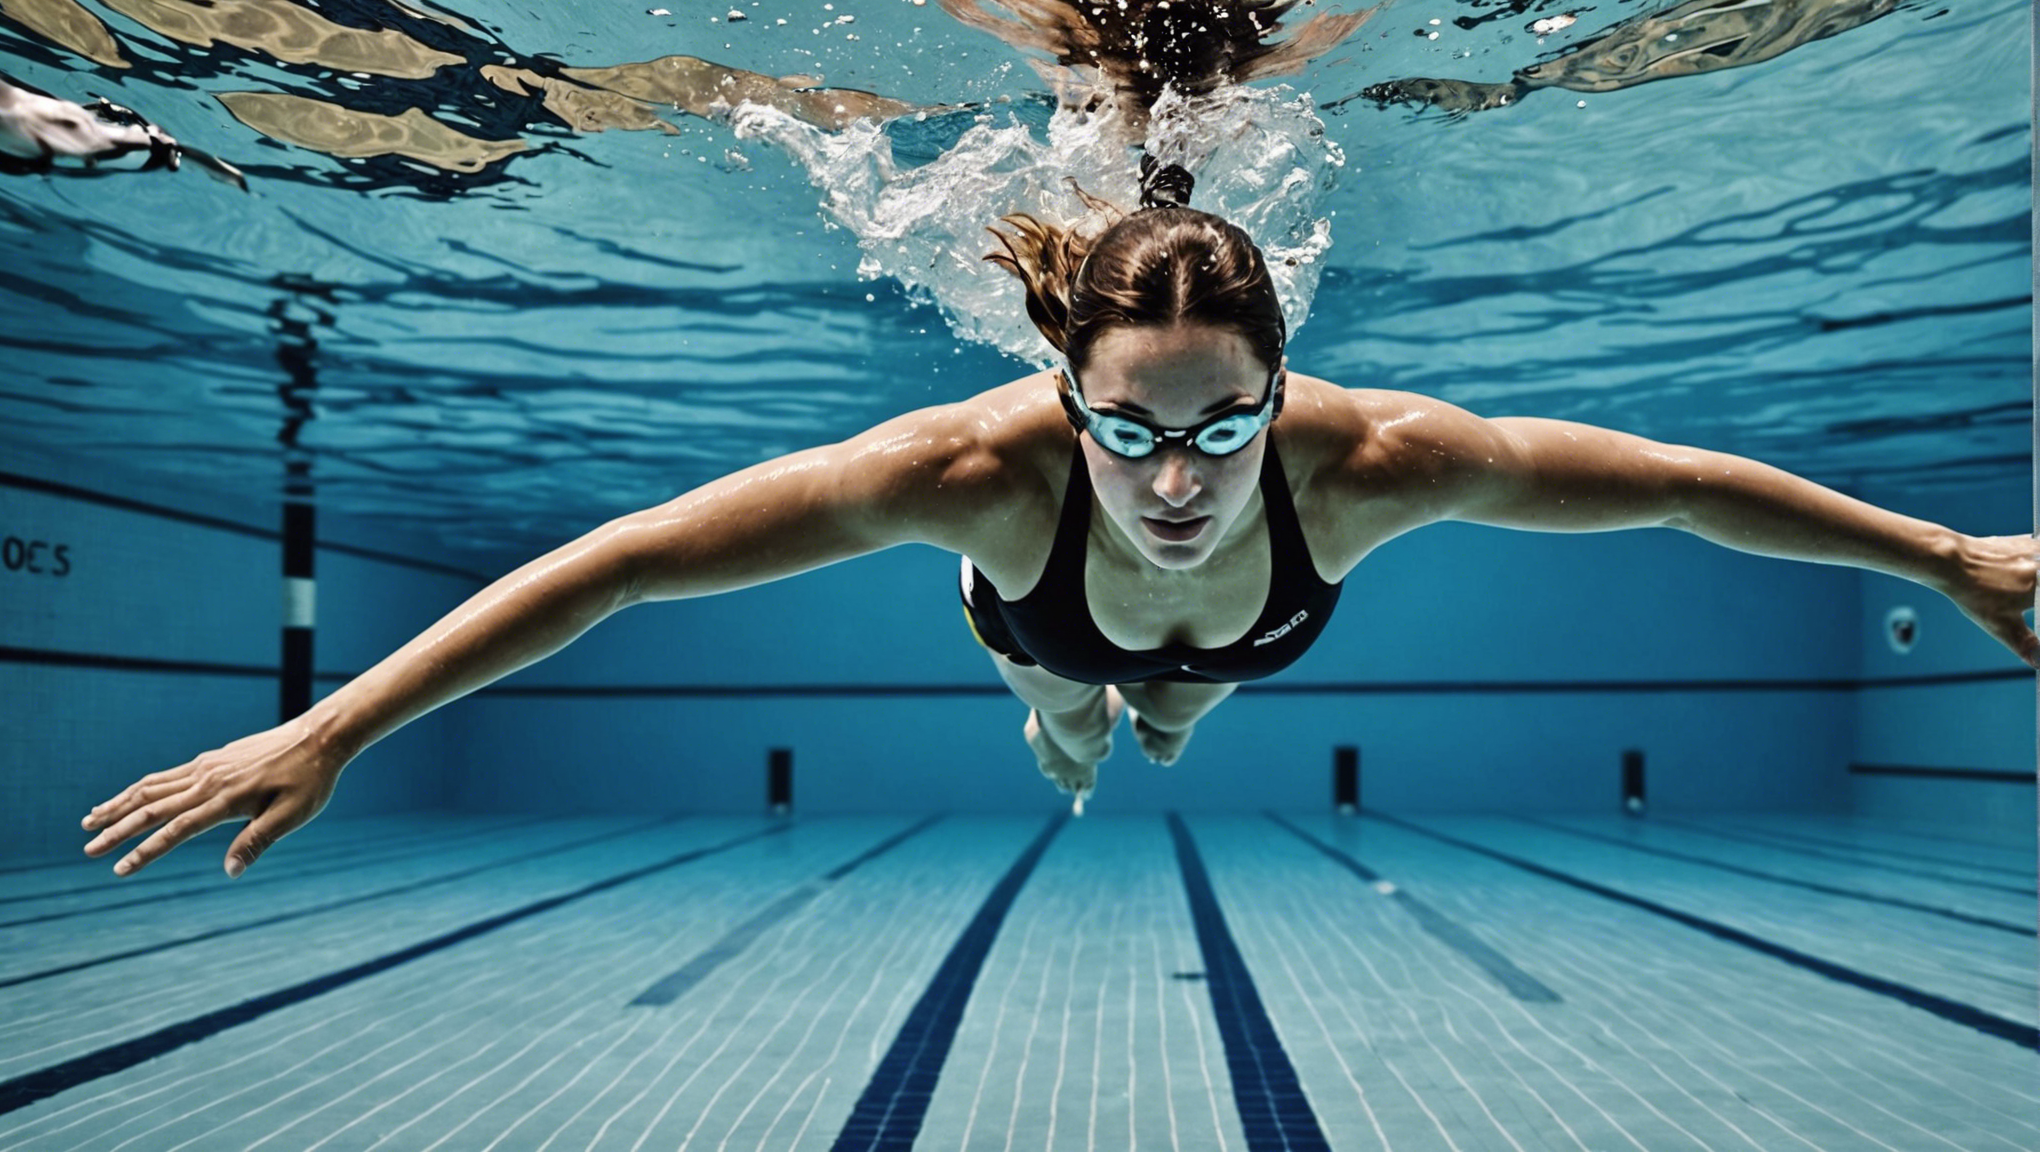 découvrez les résultats et bienfaits de la natation pour votre forme physique et votre santé. apprenez comment la natation peut améliorer vos performances et votre bien-être.